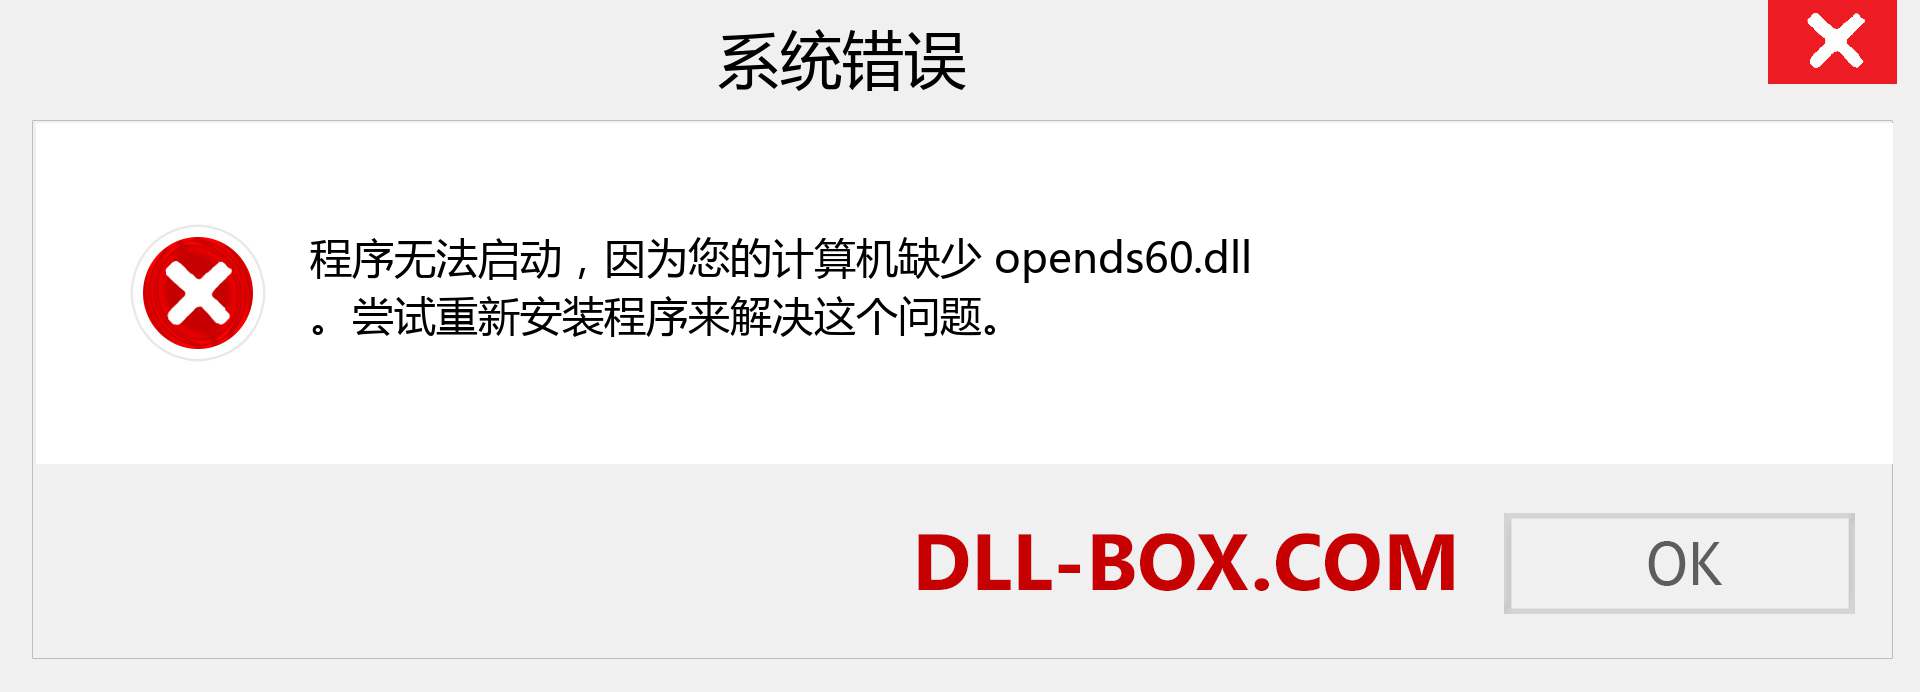 opends60.dll 文件丢失？。 适用于 Windows 7、8、10 的下载 - 修复 Windows、照片、图像上的 opends60 dll 丢失错误